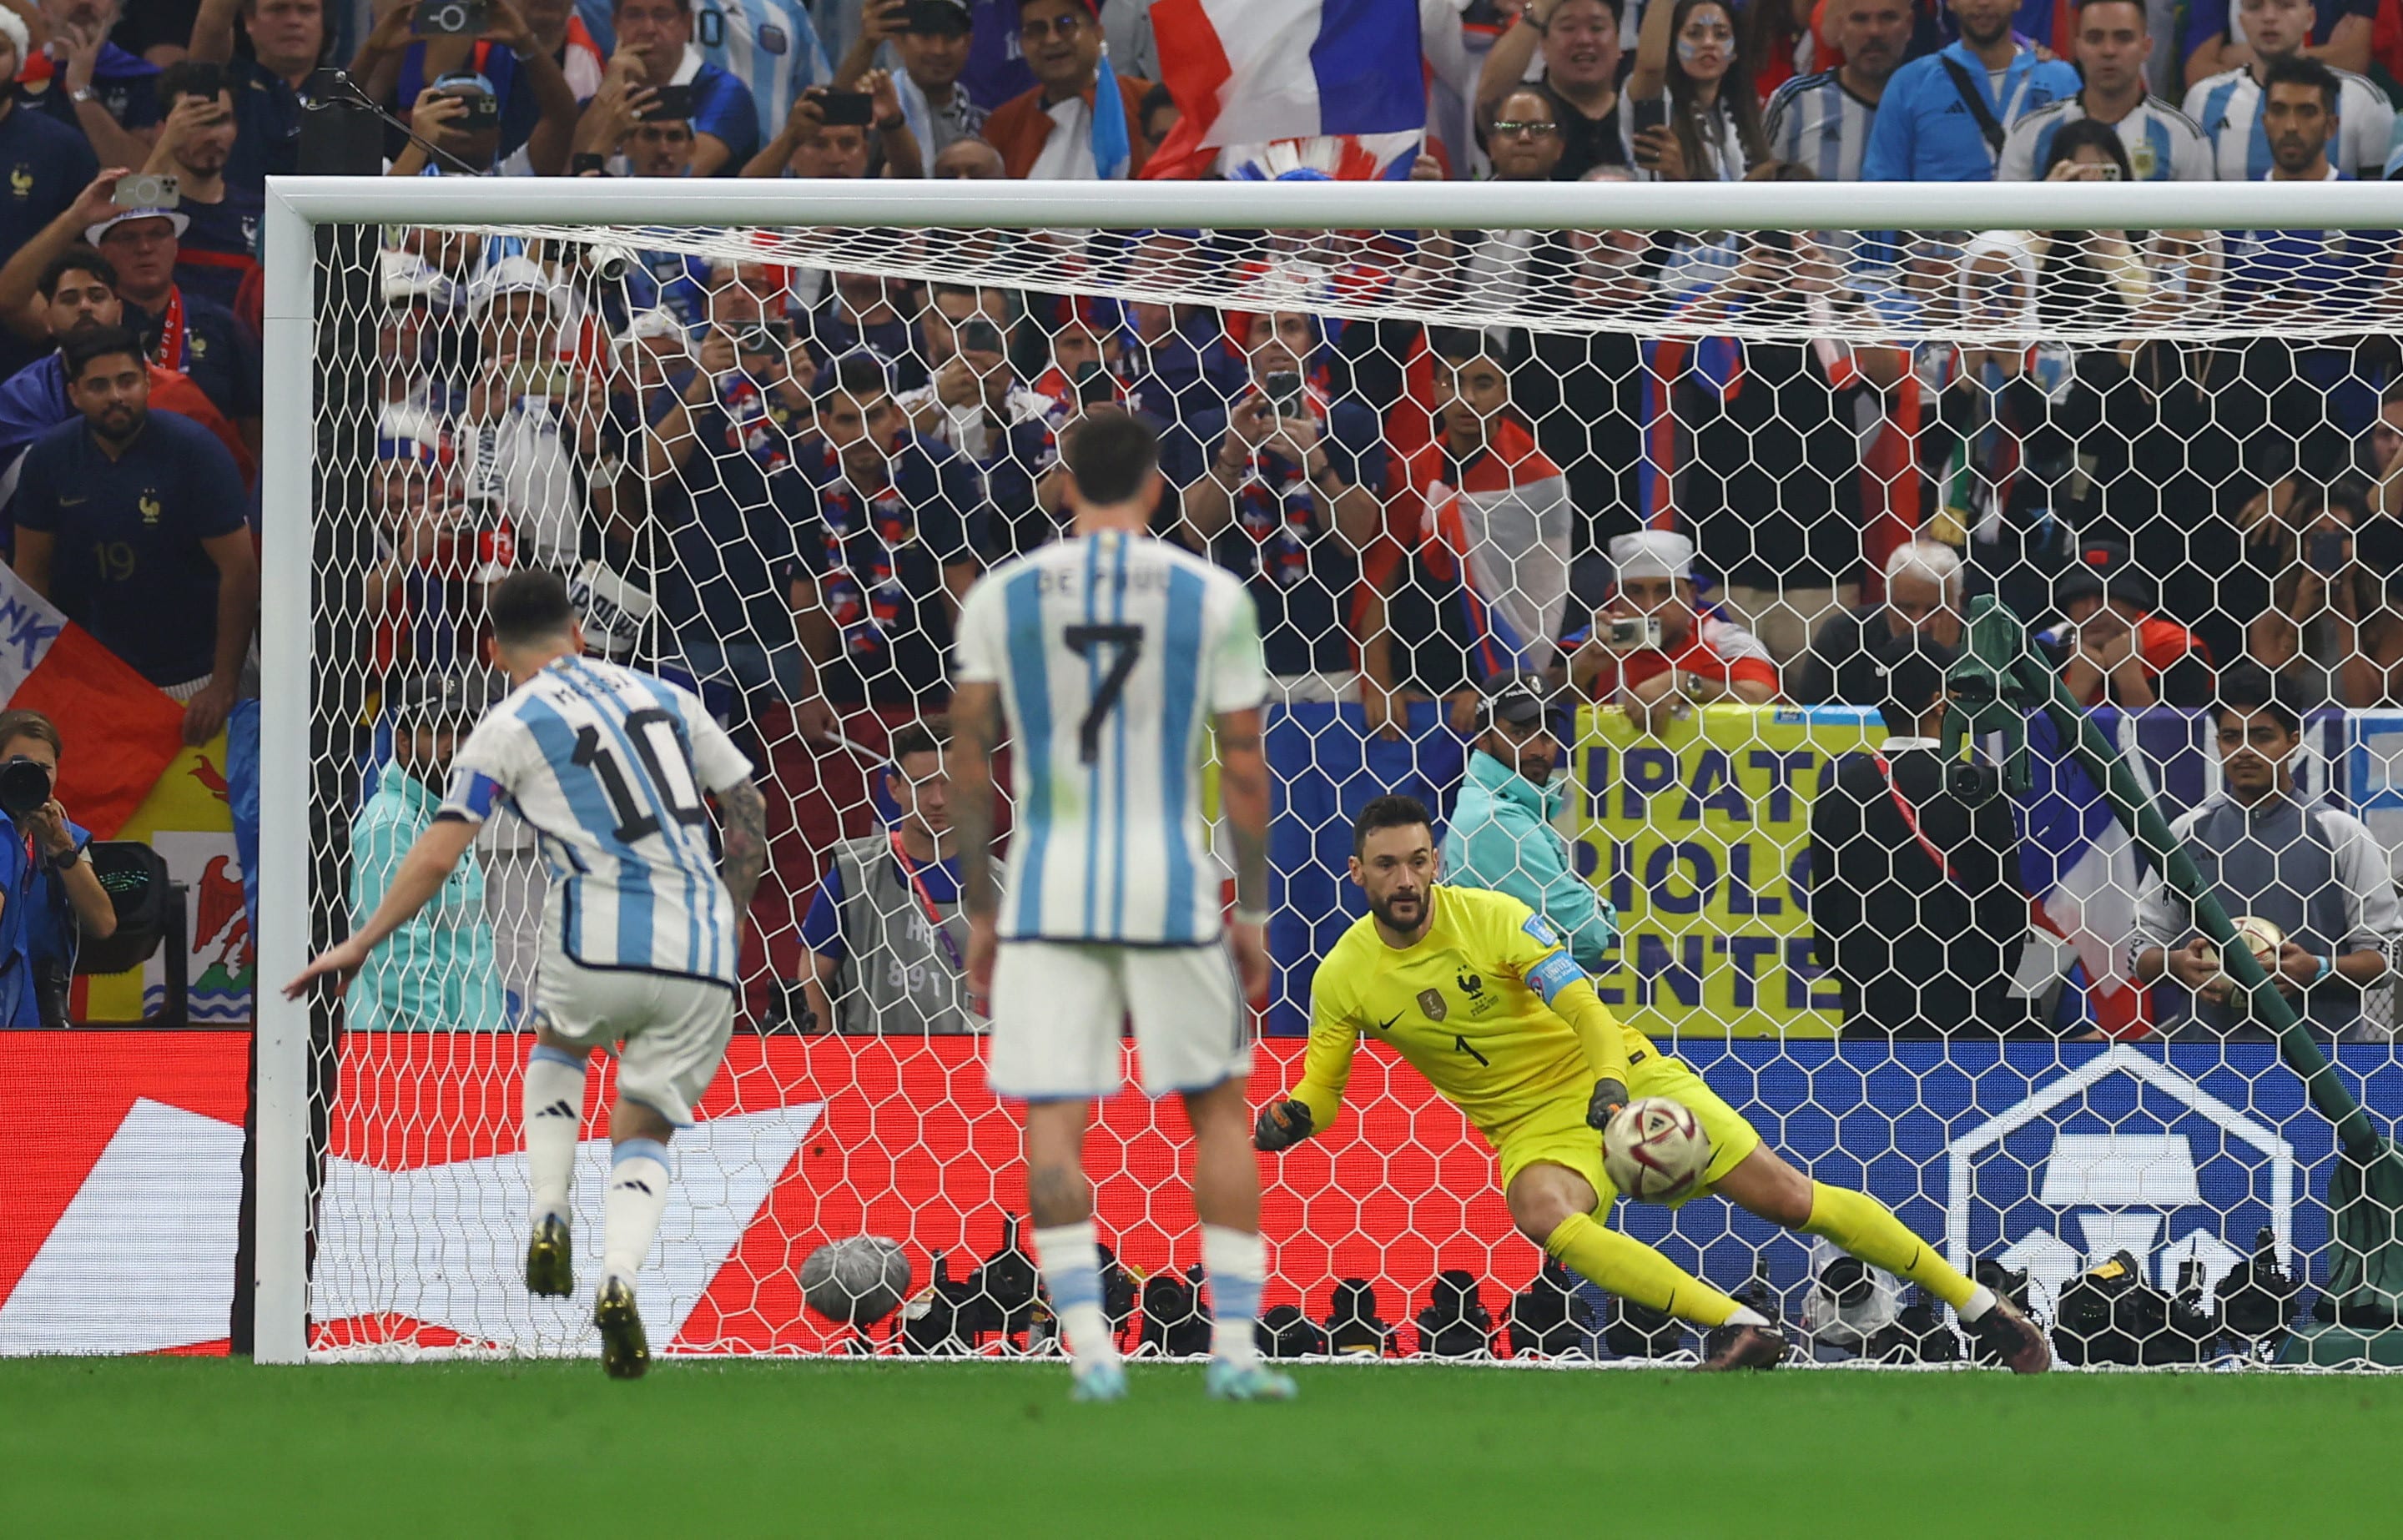 גמר מונדיאל 2022: ליאונל מסי שחקן נבחרת ארגנטינה מכניע את הוגו לוריס שוער נבחרת צרפת בפנדל